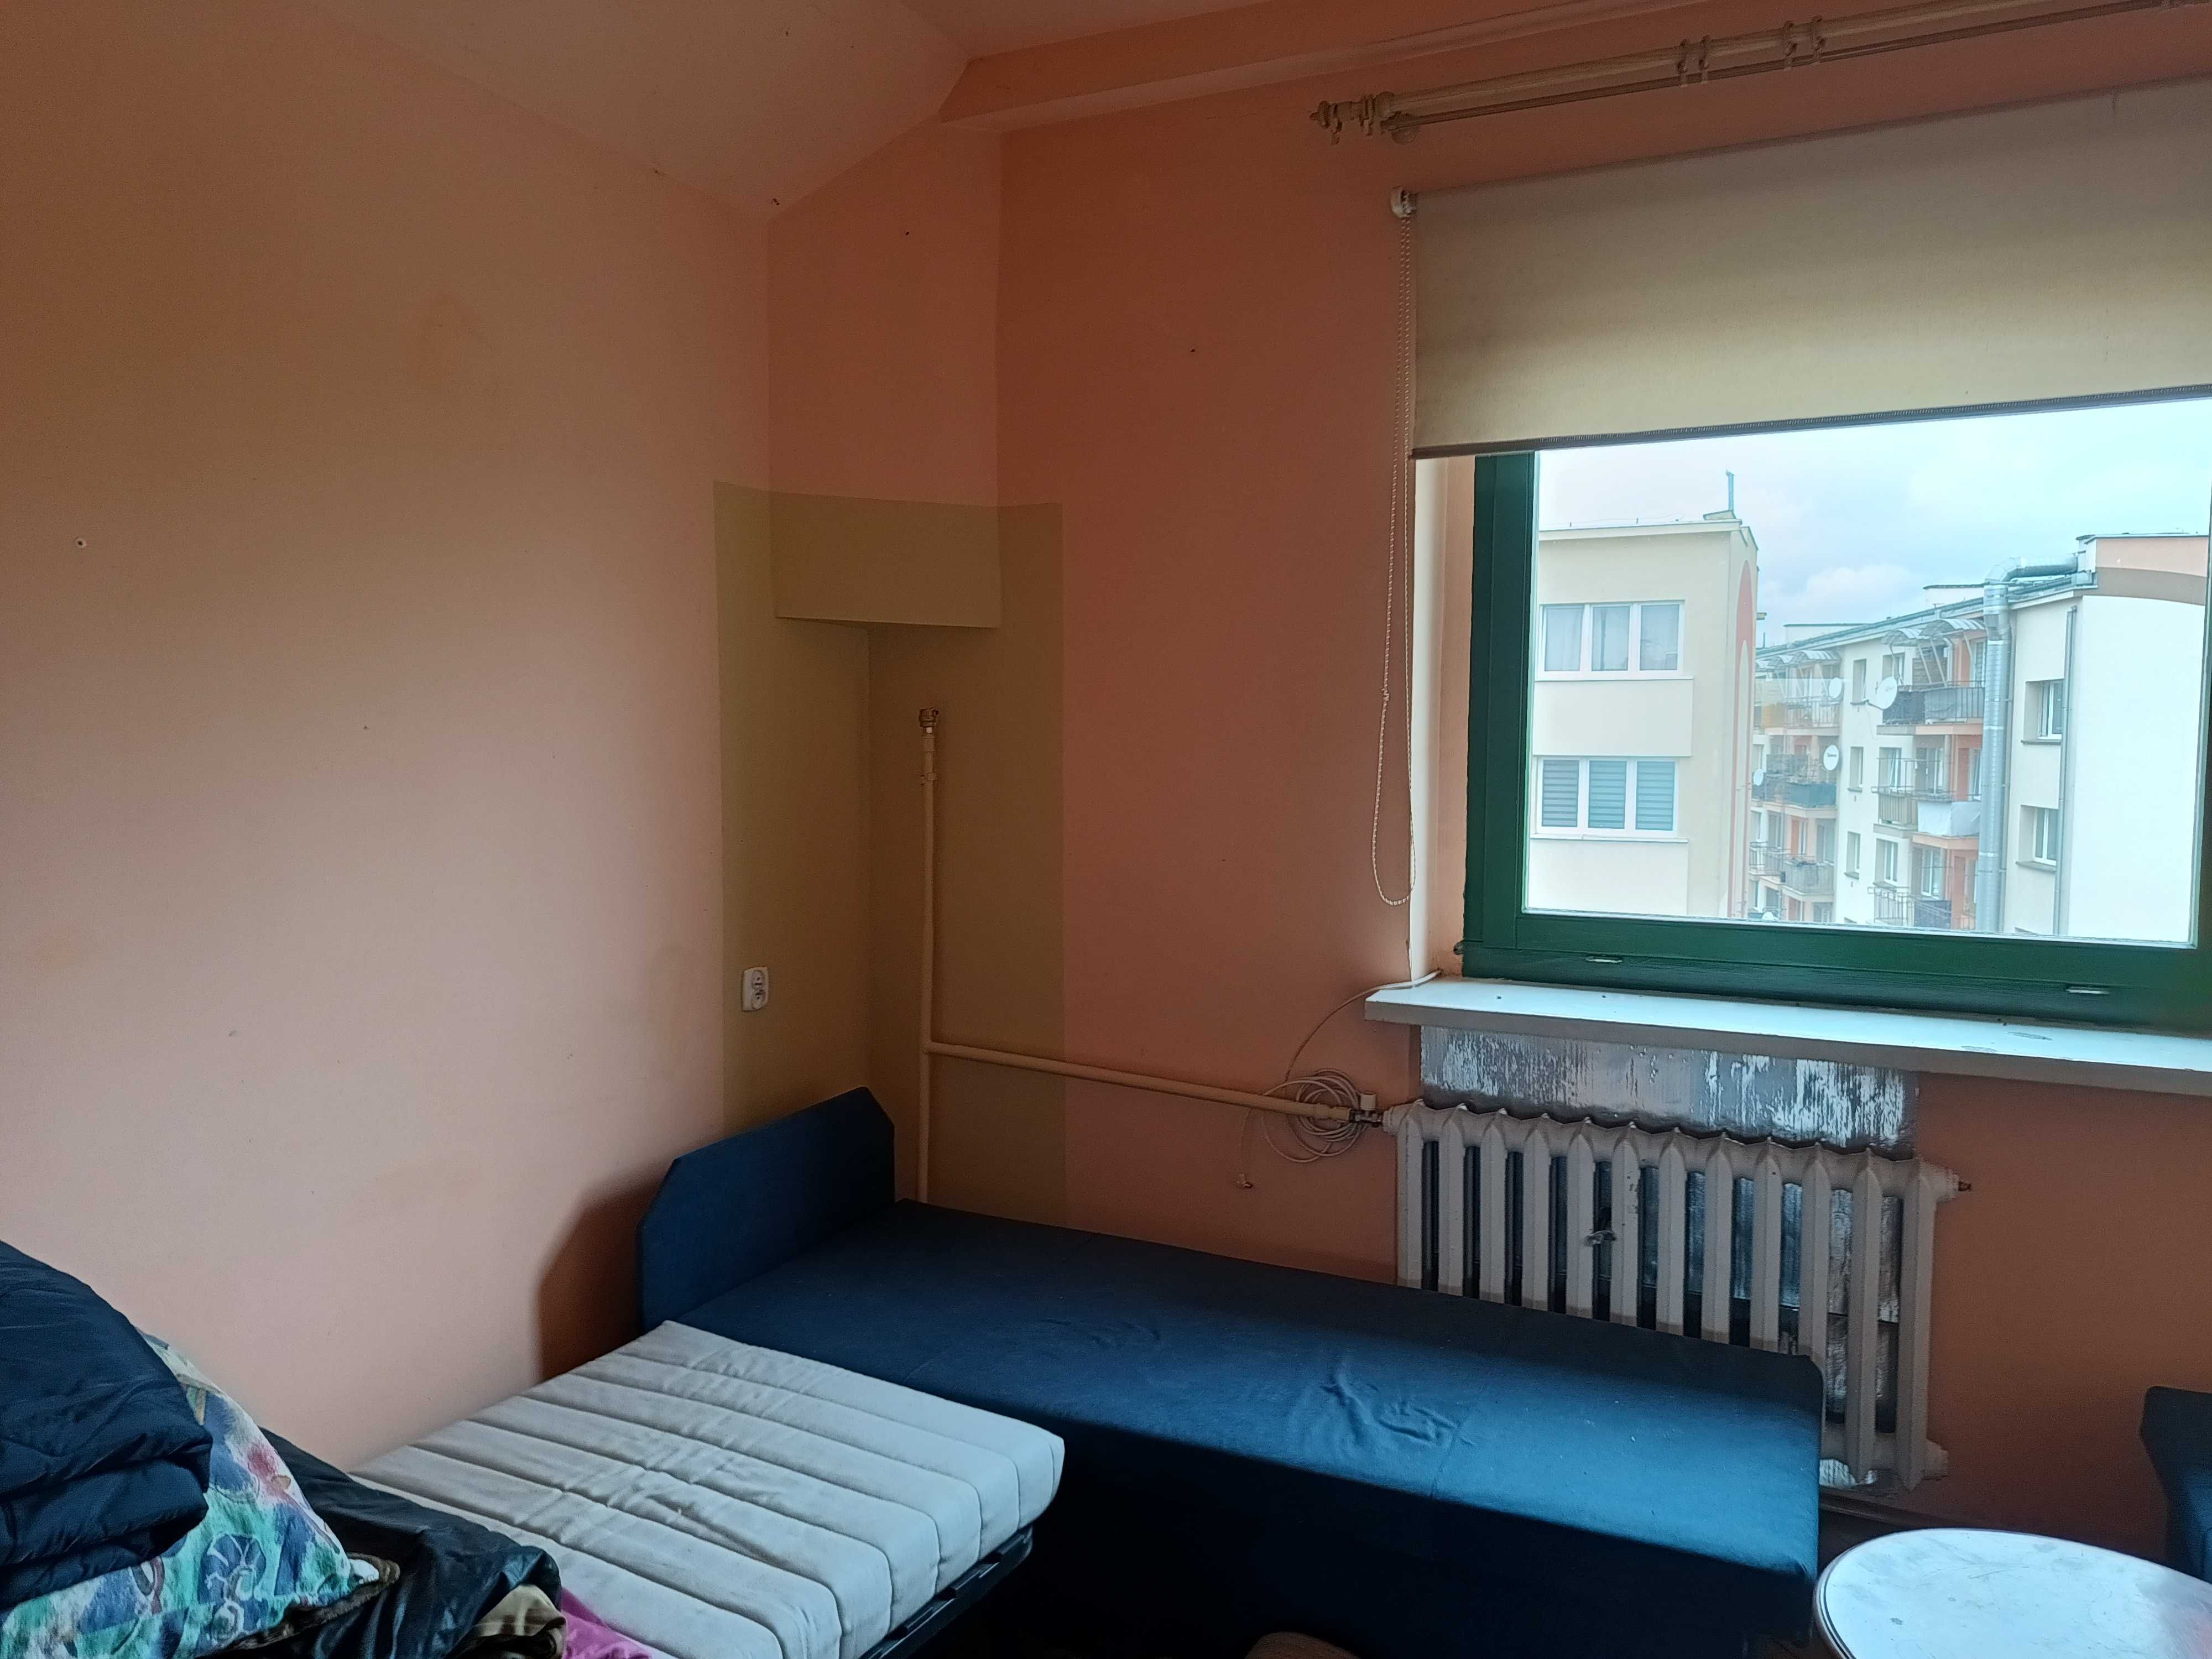 Mieszkanie jednopokojowe kawalerka, aneks w Centrum miasta dla Polaków